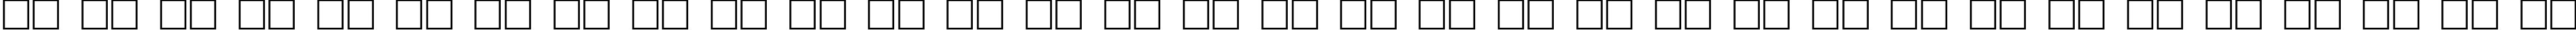 Пример написания русского алфавита шрифтом Herakles